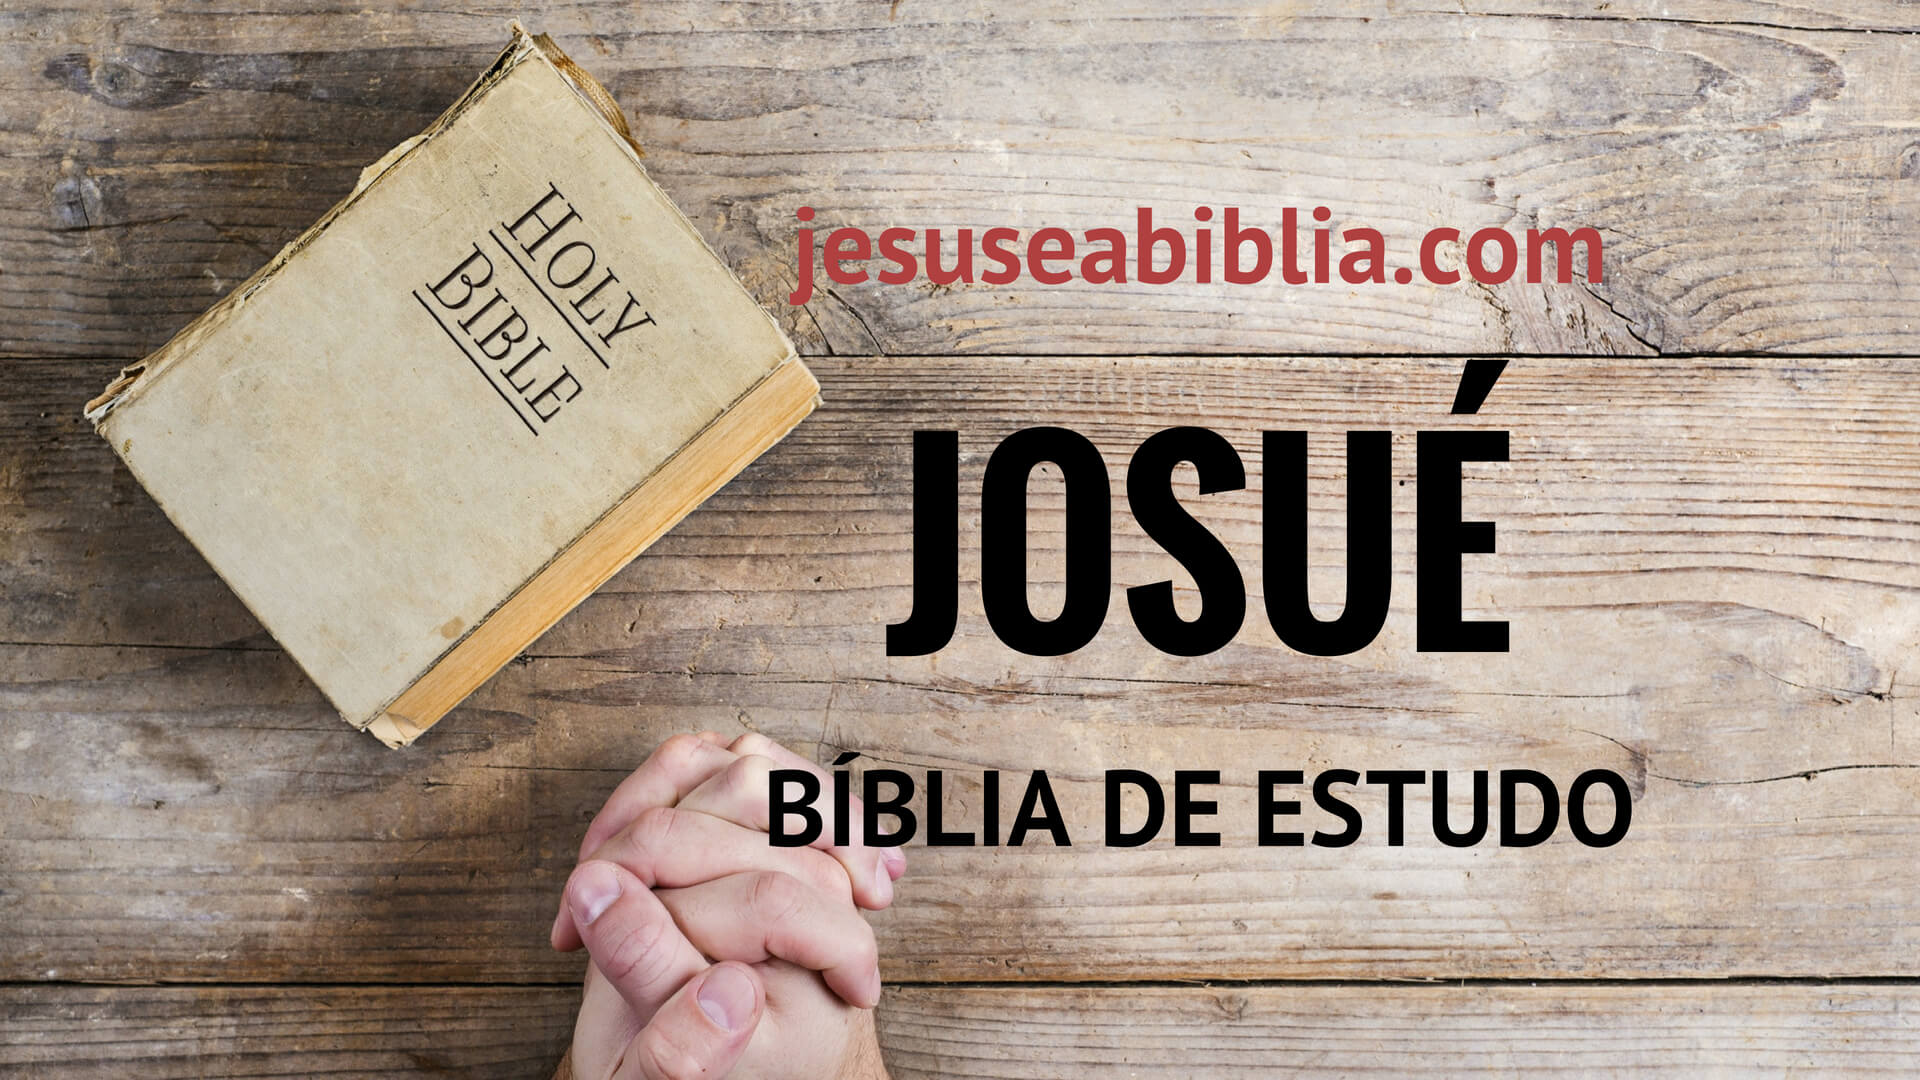 Josué 24:8 - Bíblia